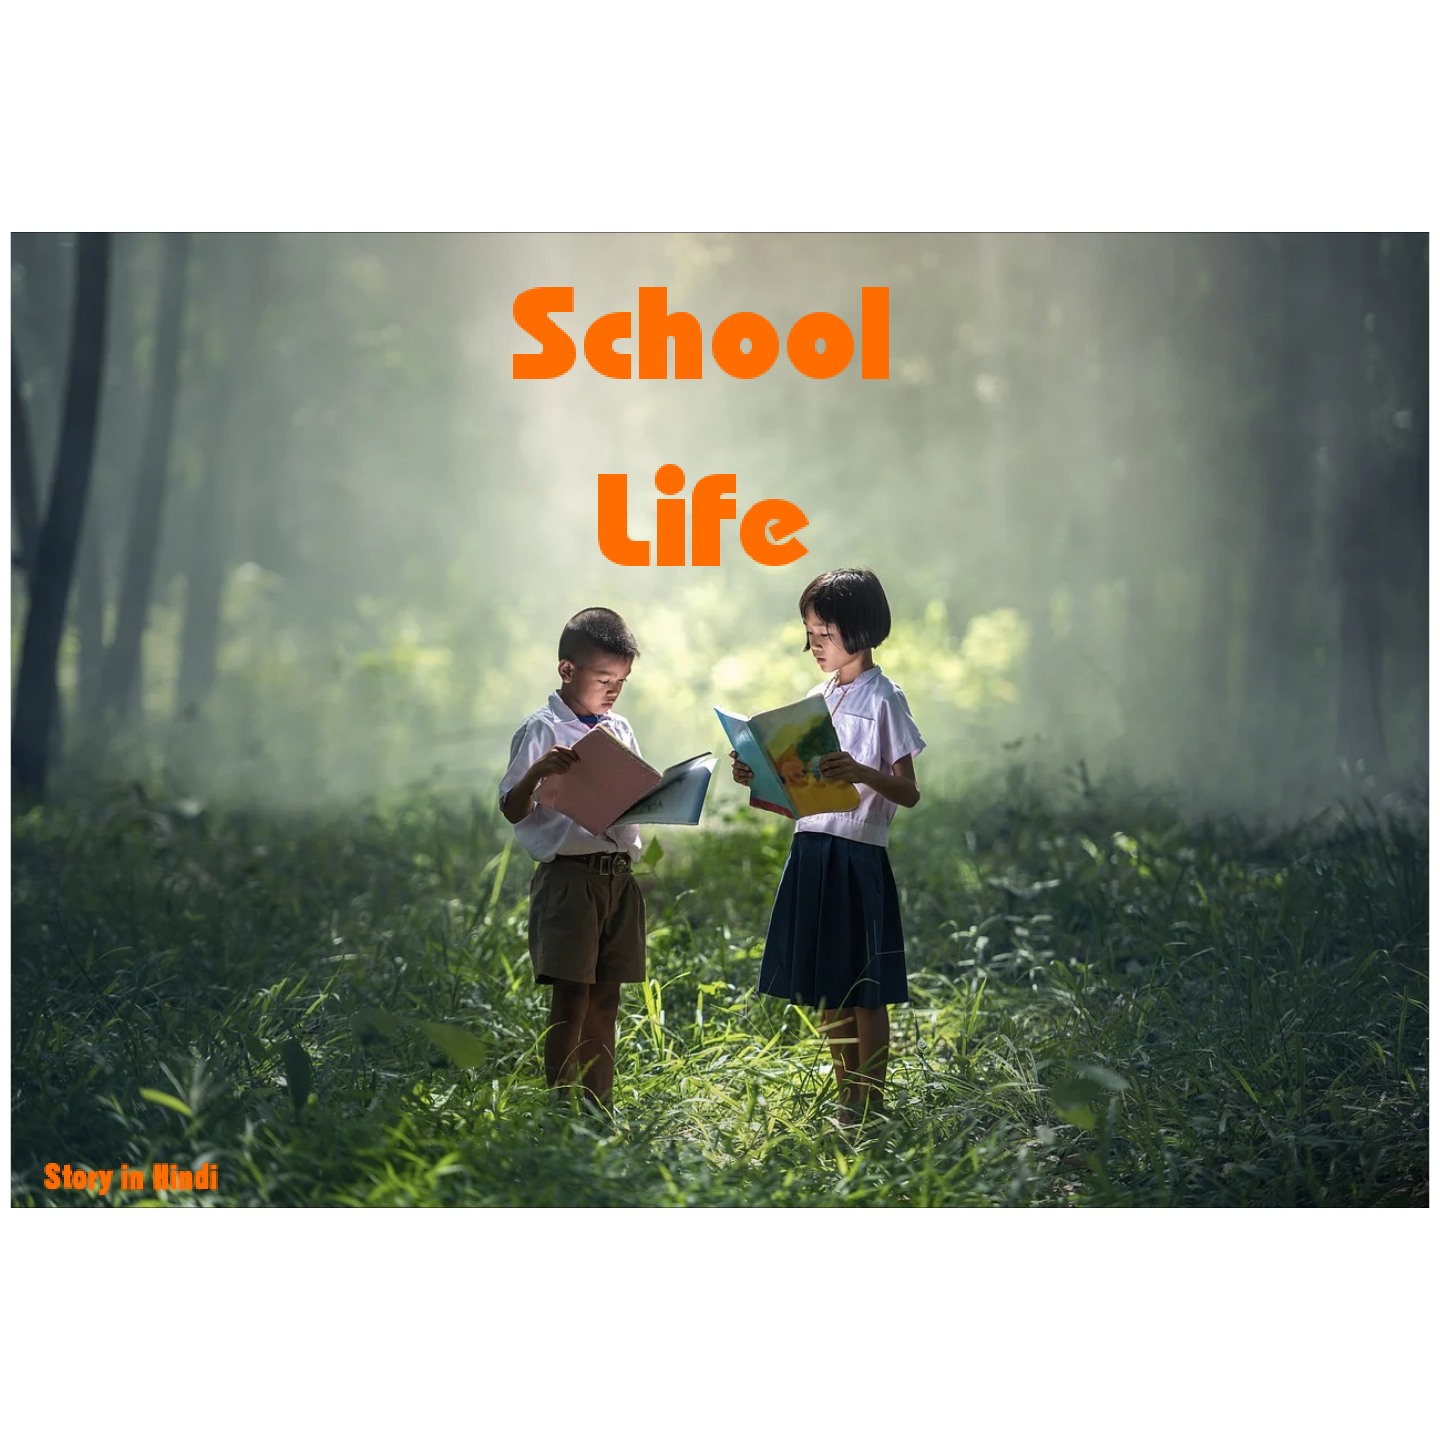 School Life, School Life is Best Life